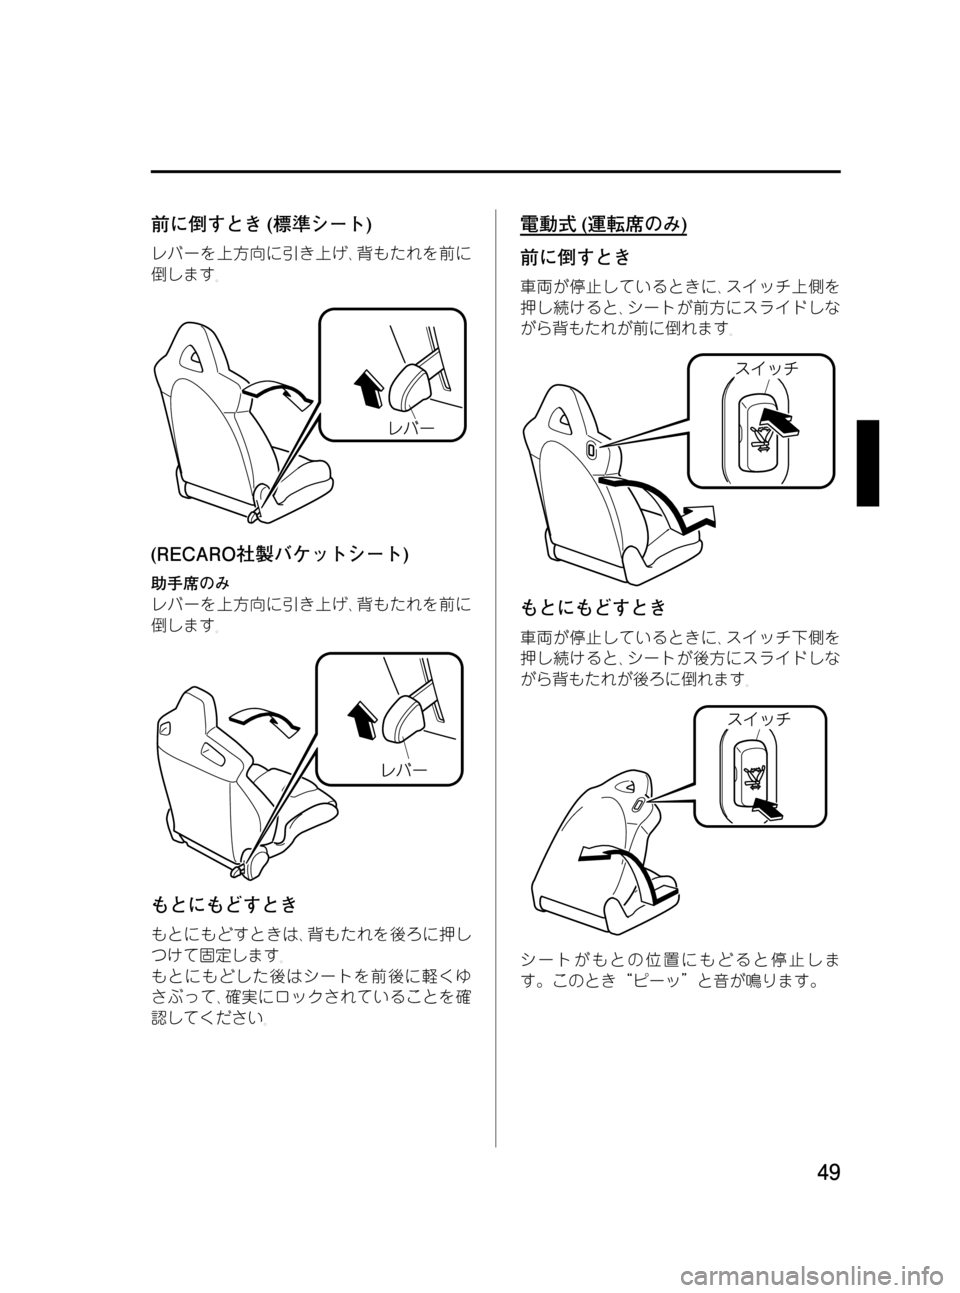 MAZDA MODEL RX 8 2008  取扱説明書 (in Japanese) Black plate (49,1)
前に倒すとき(標準シート)
レバーを上方向に引き上げ､背もたれを前に
倒します｡
(RECARO社製バケットシート)
助手席のみ
レバーを上�